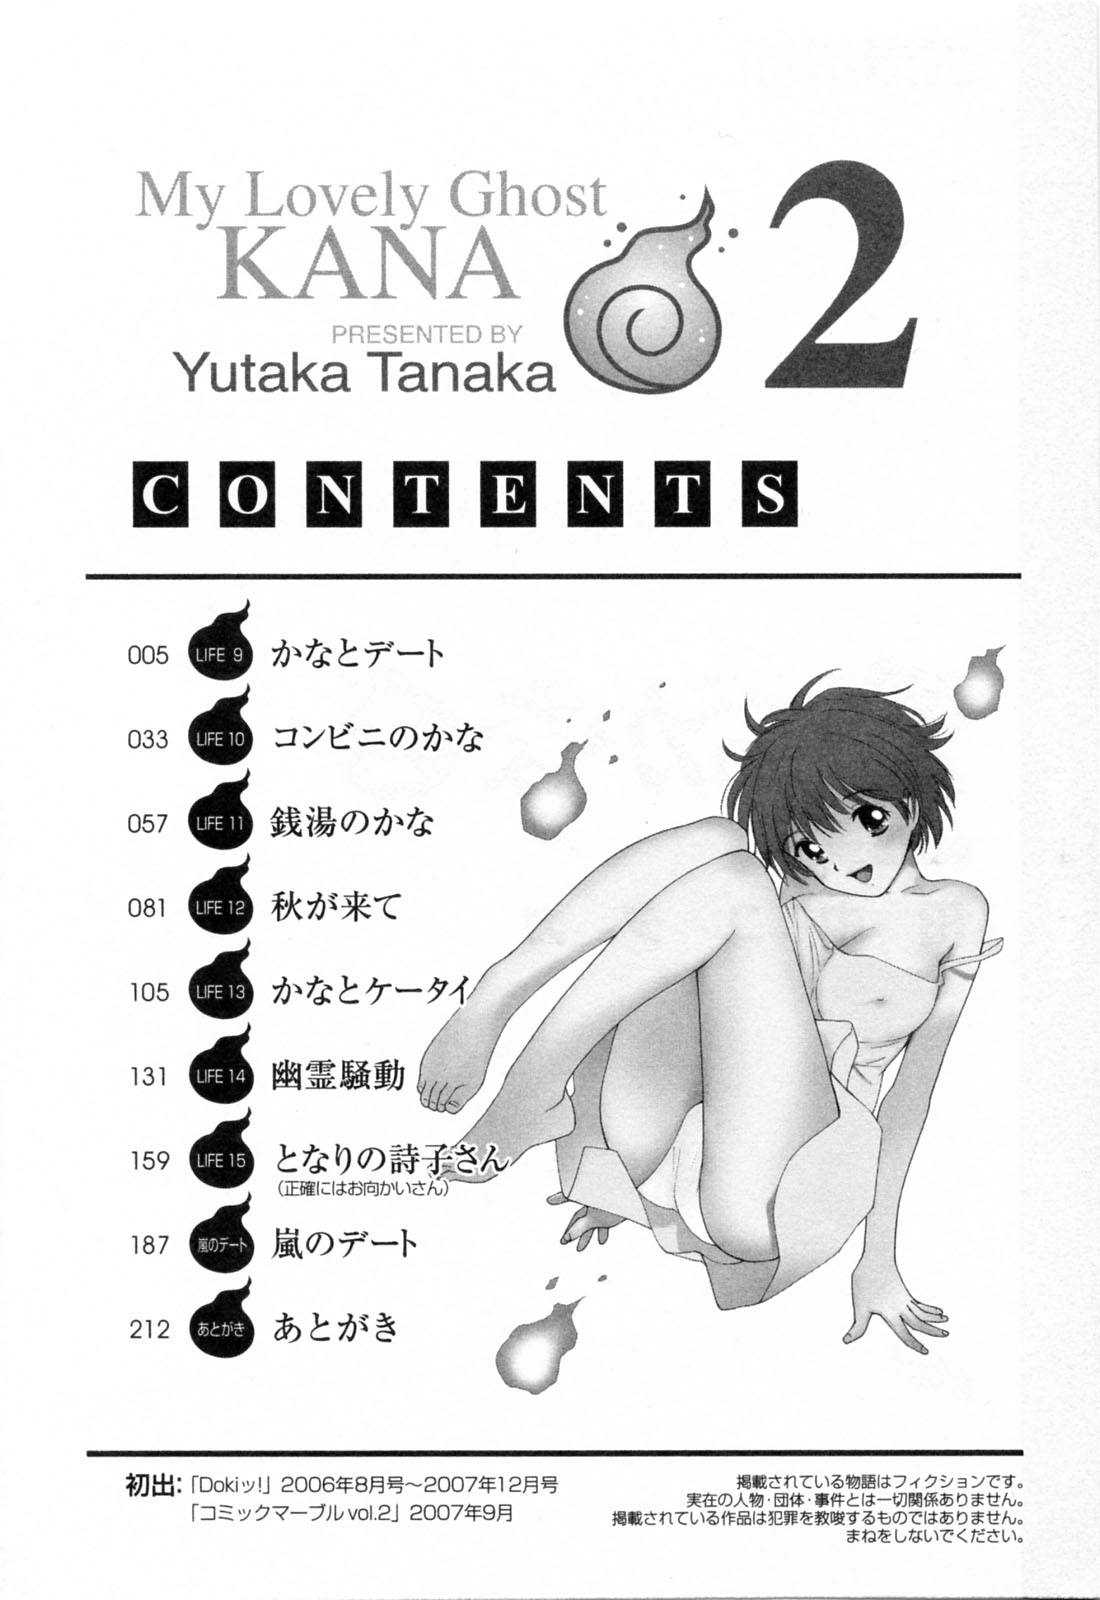 [Yutaka Tanaka] My Lovely Ghost KANA Vol.02 